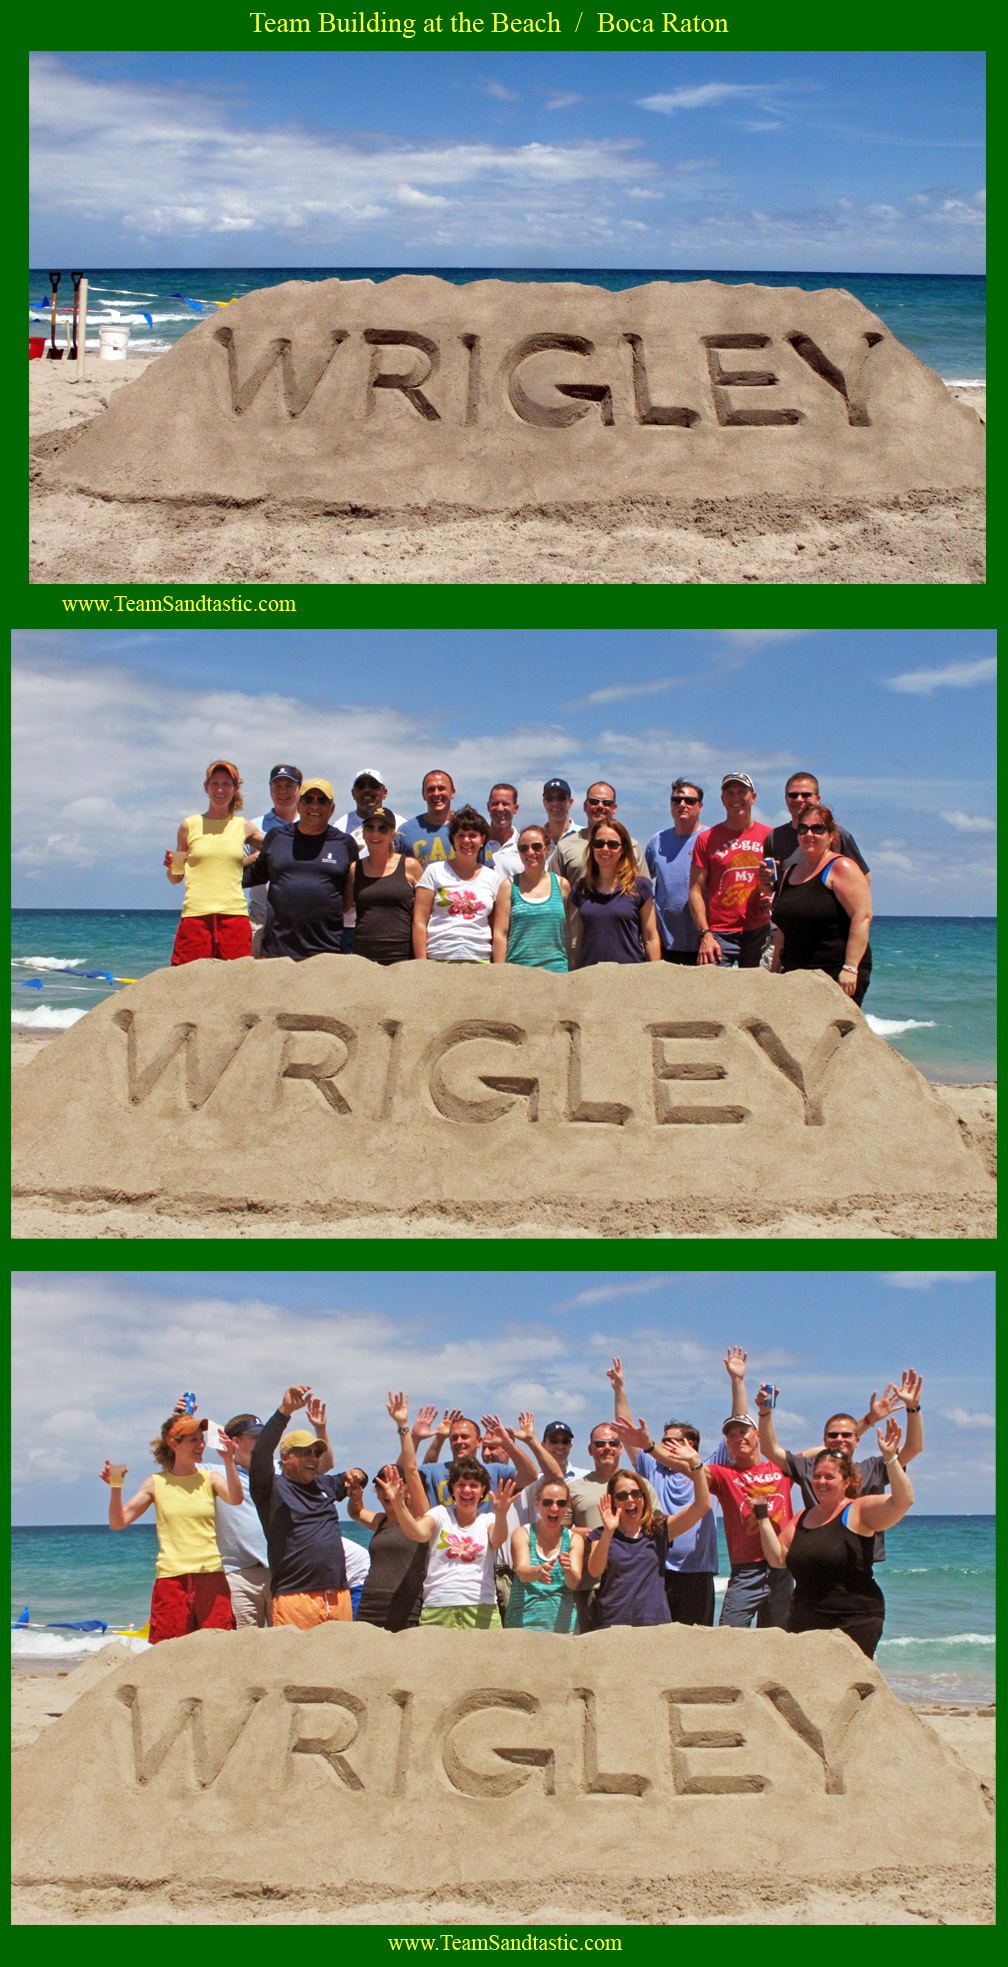 Wrigley Logo in Sand